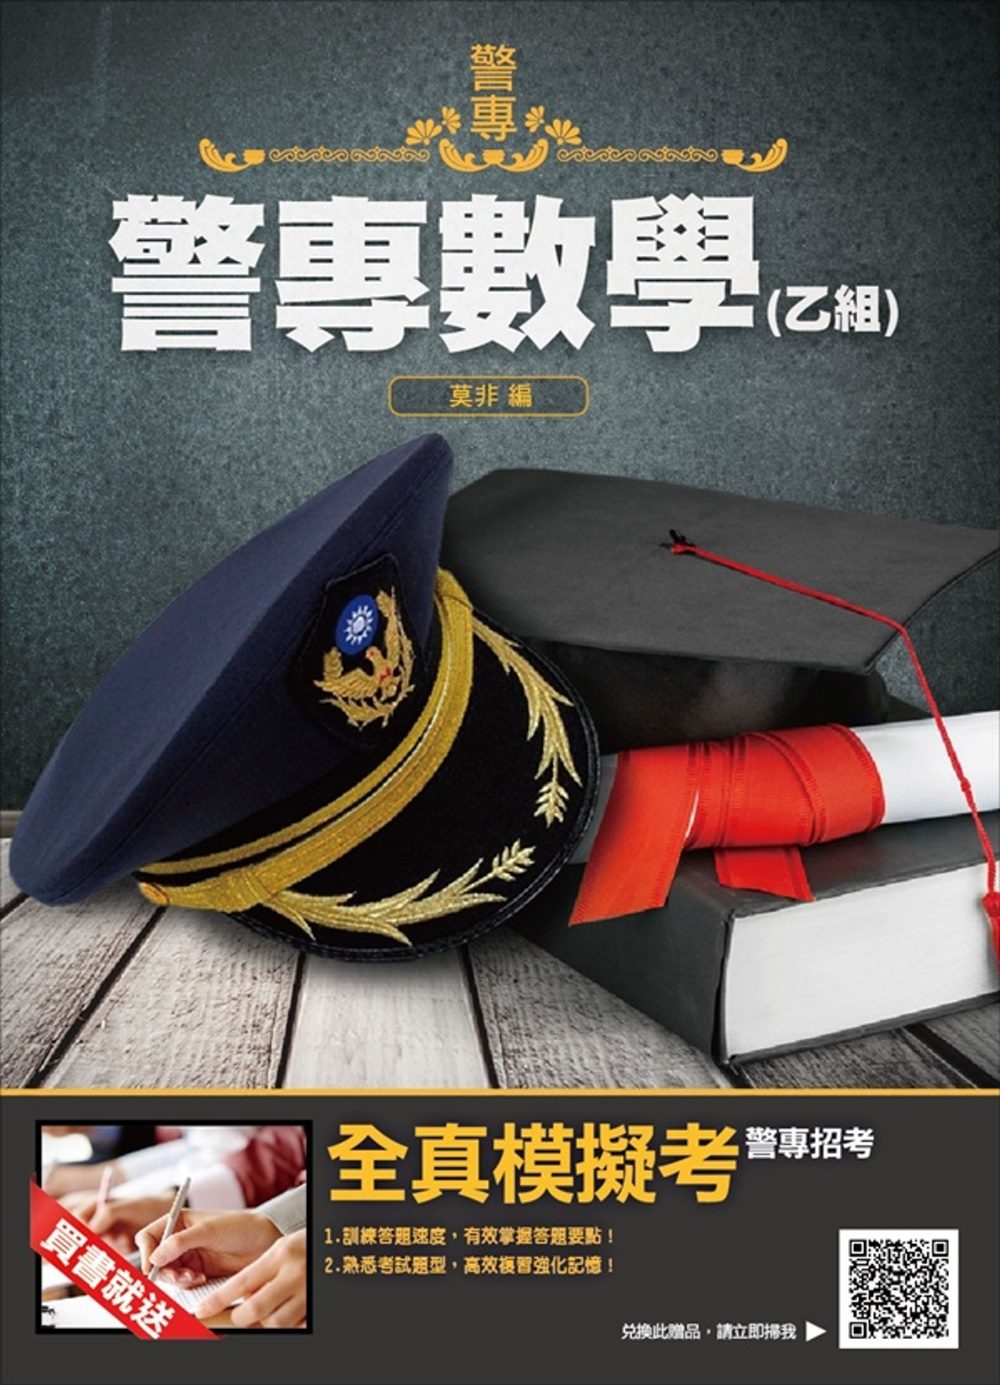 【2019年警專入學考試】警專數學（乙組）